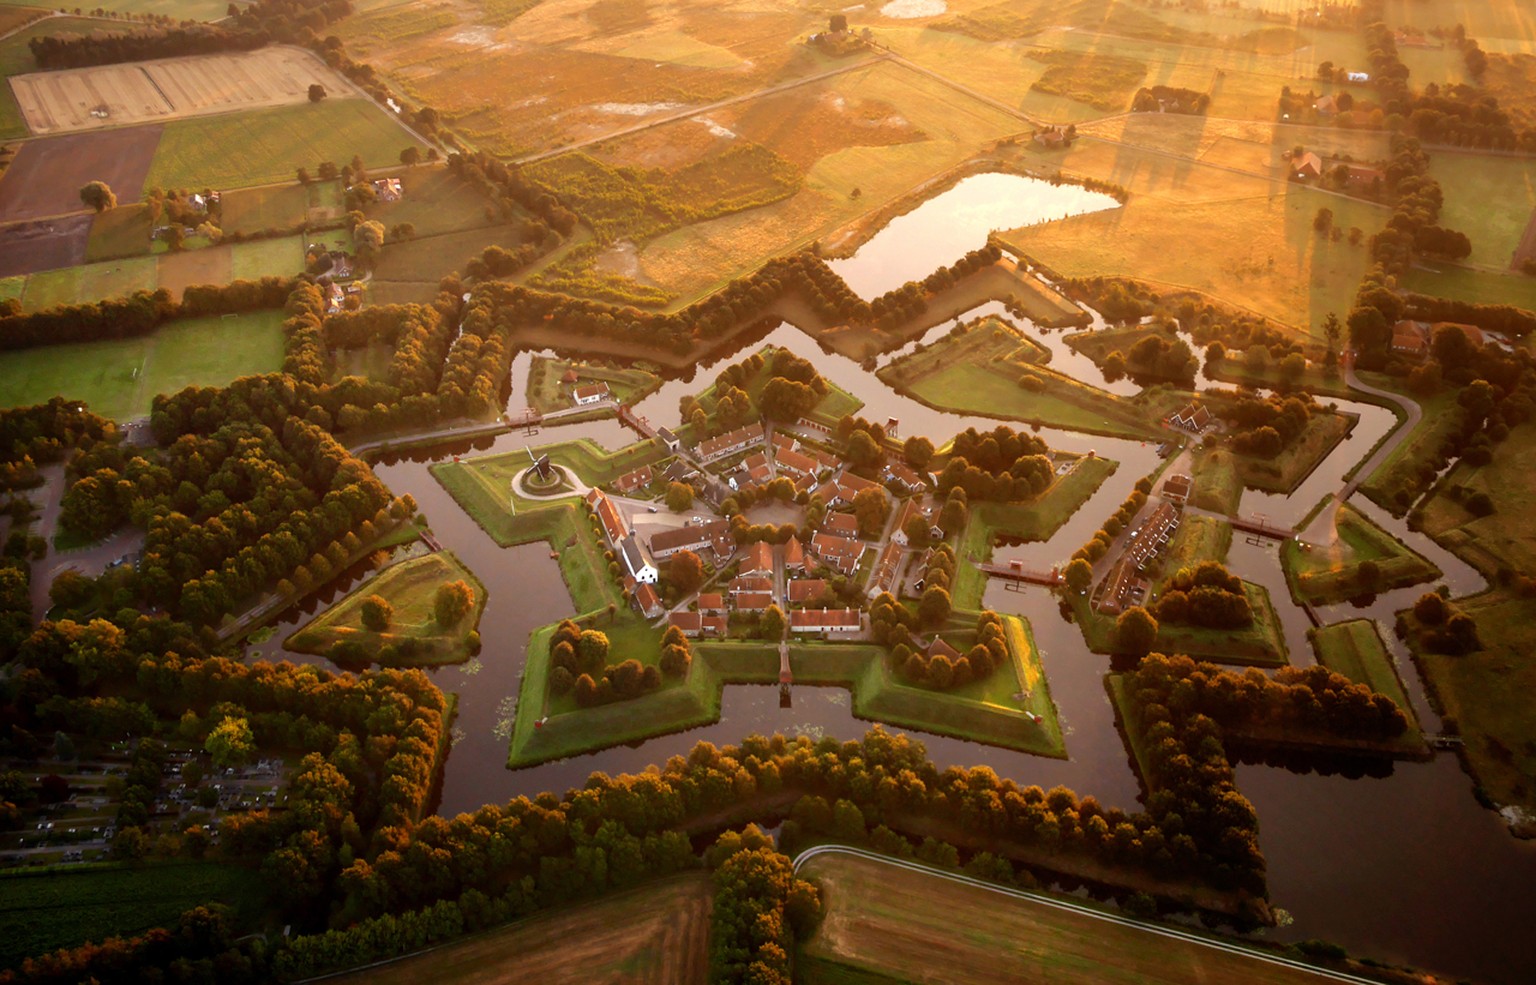 Die sternförmige Festung Bourtange in der niederländischen Provinz Groningen. Drei Jahrhunderte nach dem die letzten Kanonenkugeln auf die Festung abgefeuert wurden, dient es heute als Museum und ist das Zentrum des verschlafenen Bauerndorfes im Osten der Niederlande.